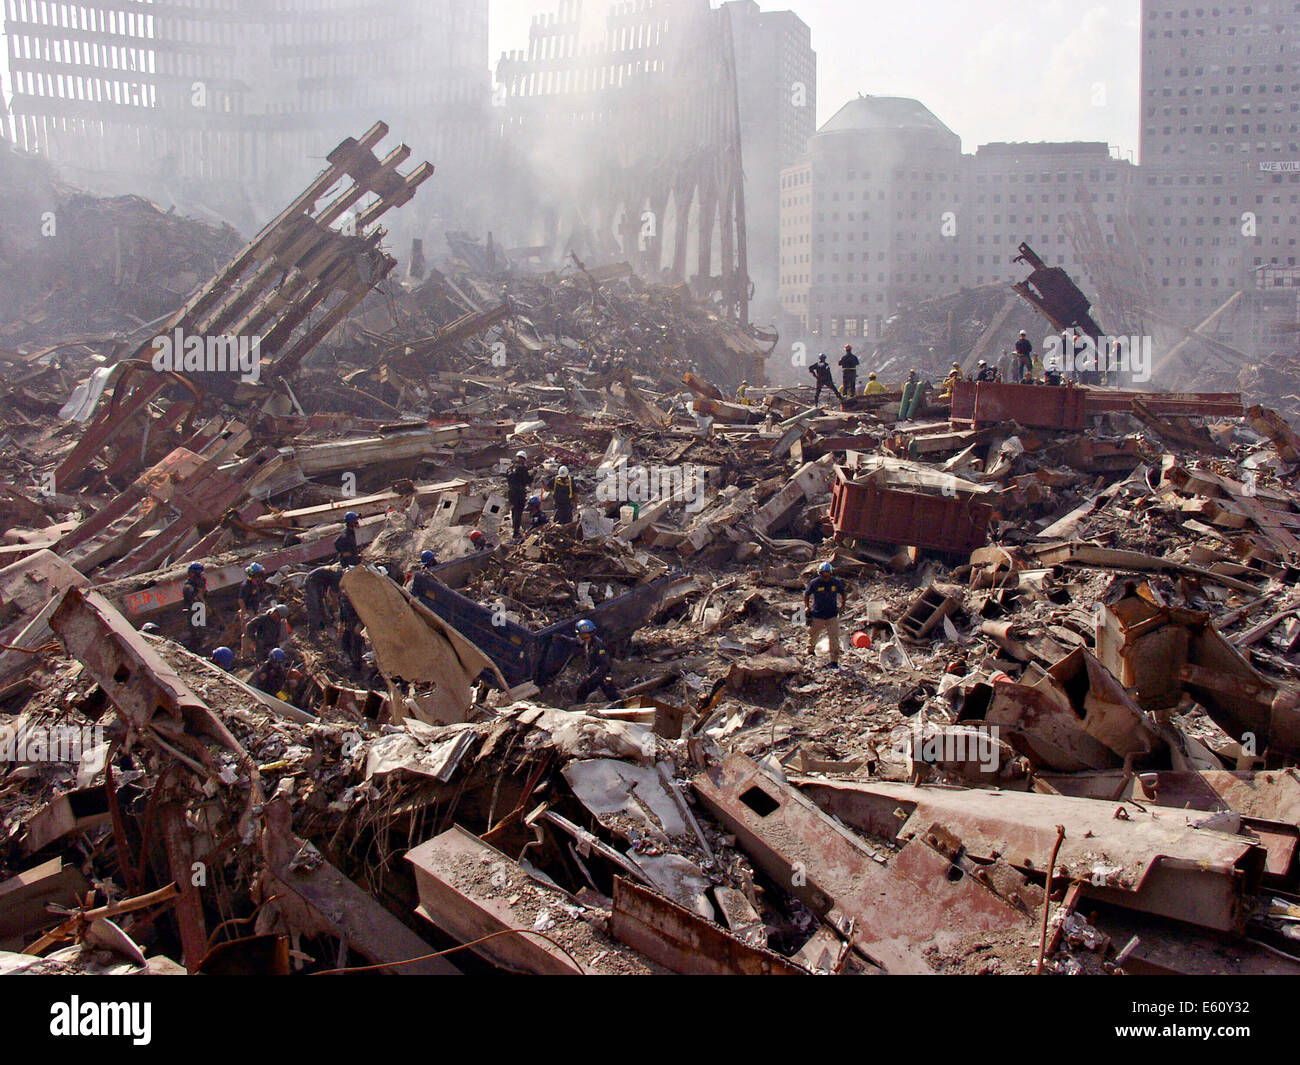 Urban squadre di ricerca e soccorso guardare attraverso le macerie per vittime tra le macerie del World Trade Center a seguito di un massiccio attacco terroristico che ha distrutto le torri gemelle uccidendo 2,606 persone, 21 settembre 2001 a New York, NY. Foto Stock